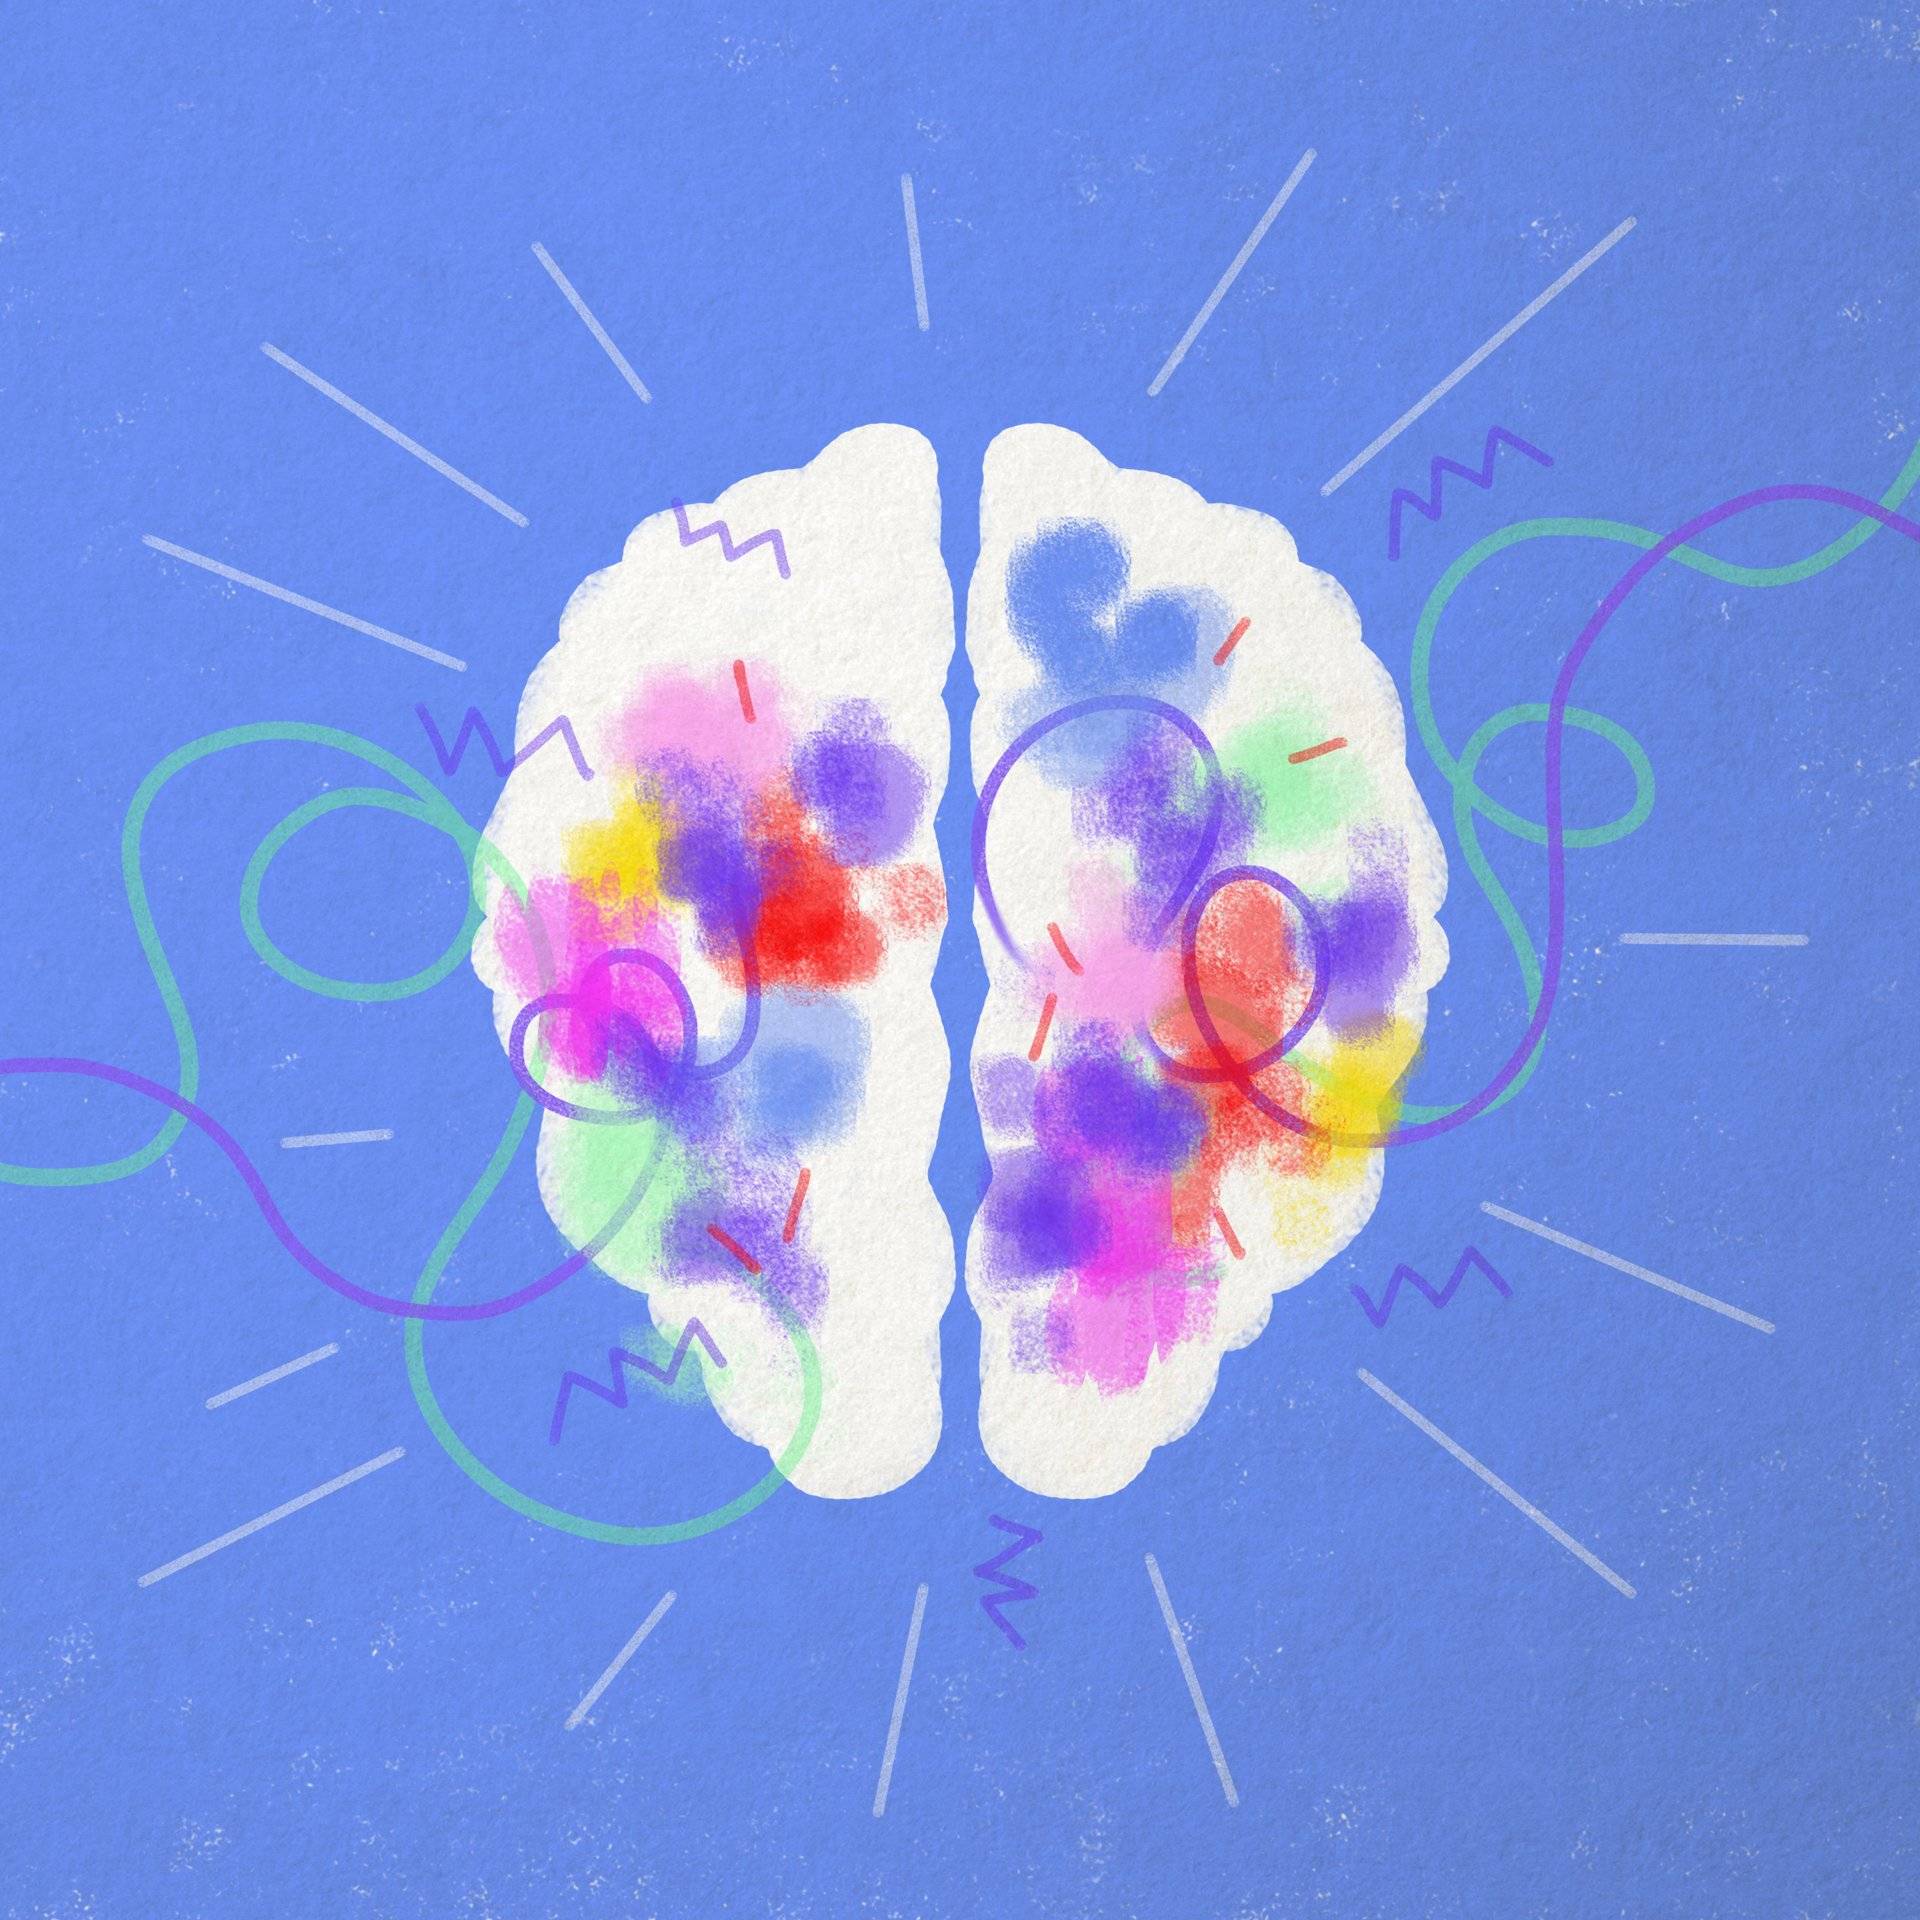 rysunek przedstawia dwie półkule mózgowe z kolorowymi punktami na ich powierzchni